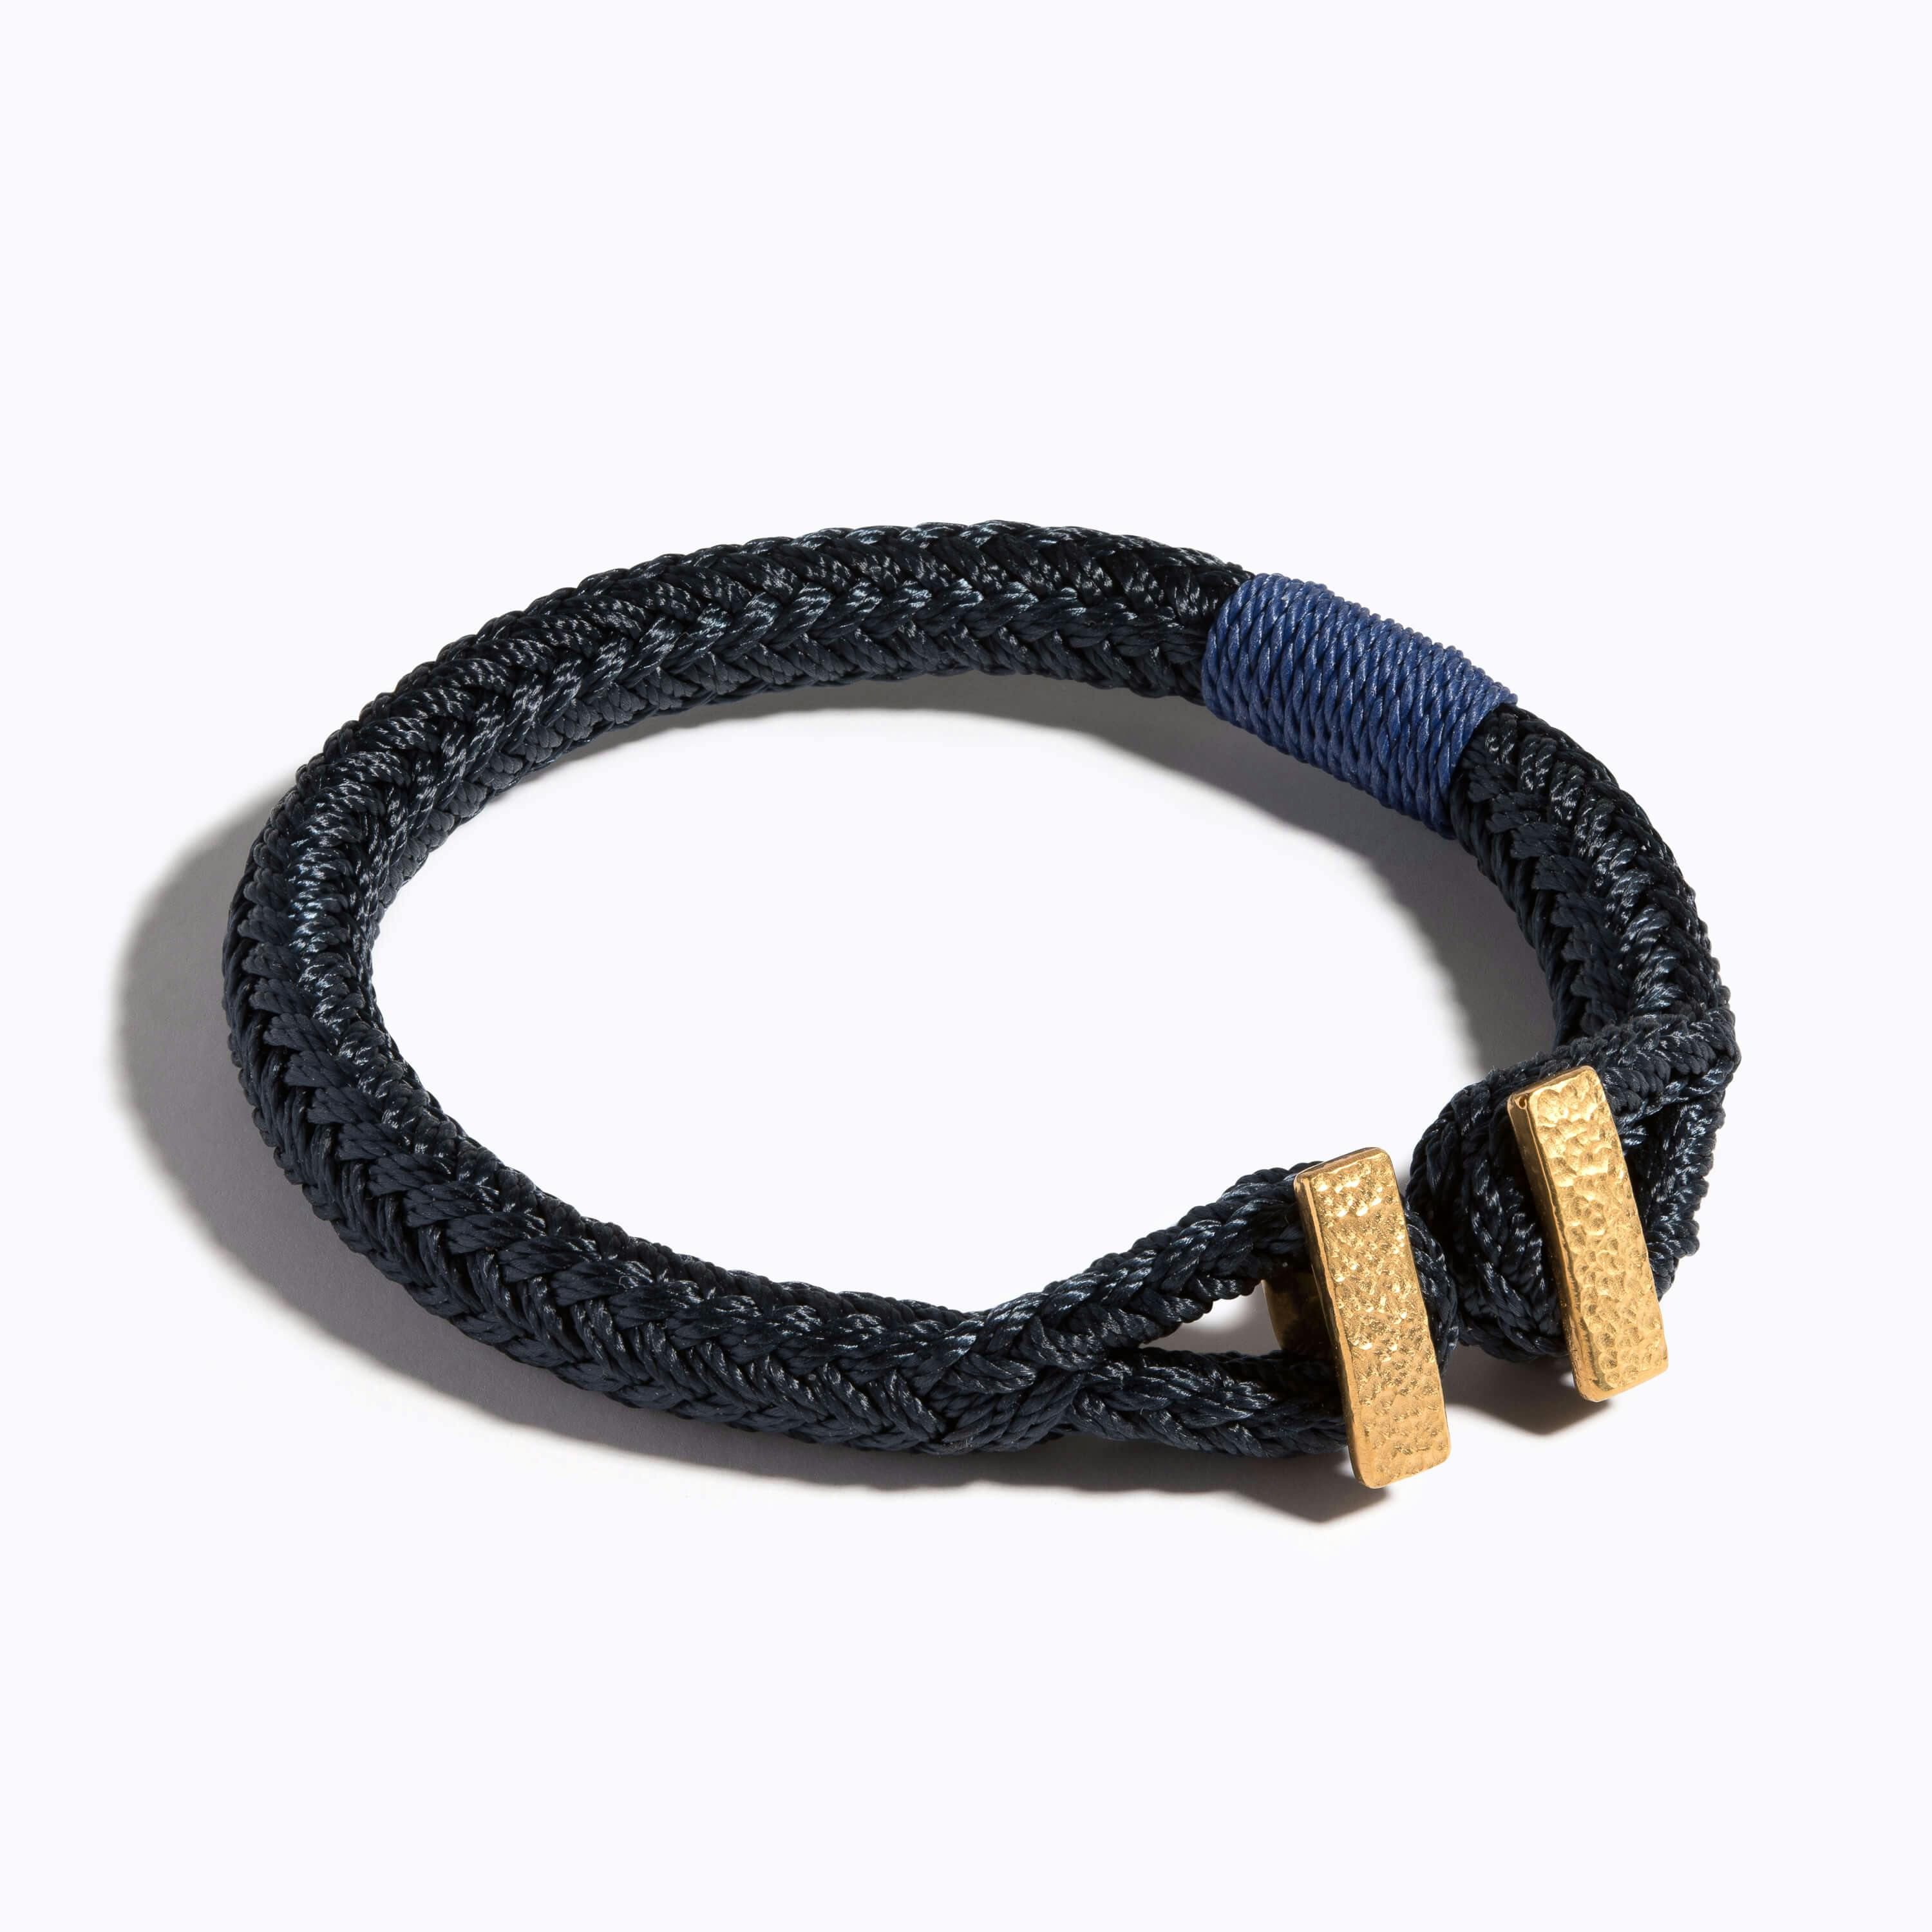 Hammered Woven Bracelet on navy nylon rope